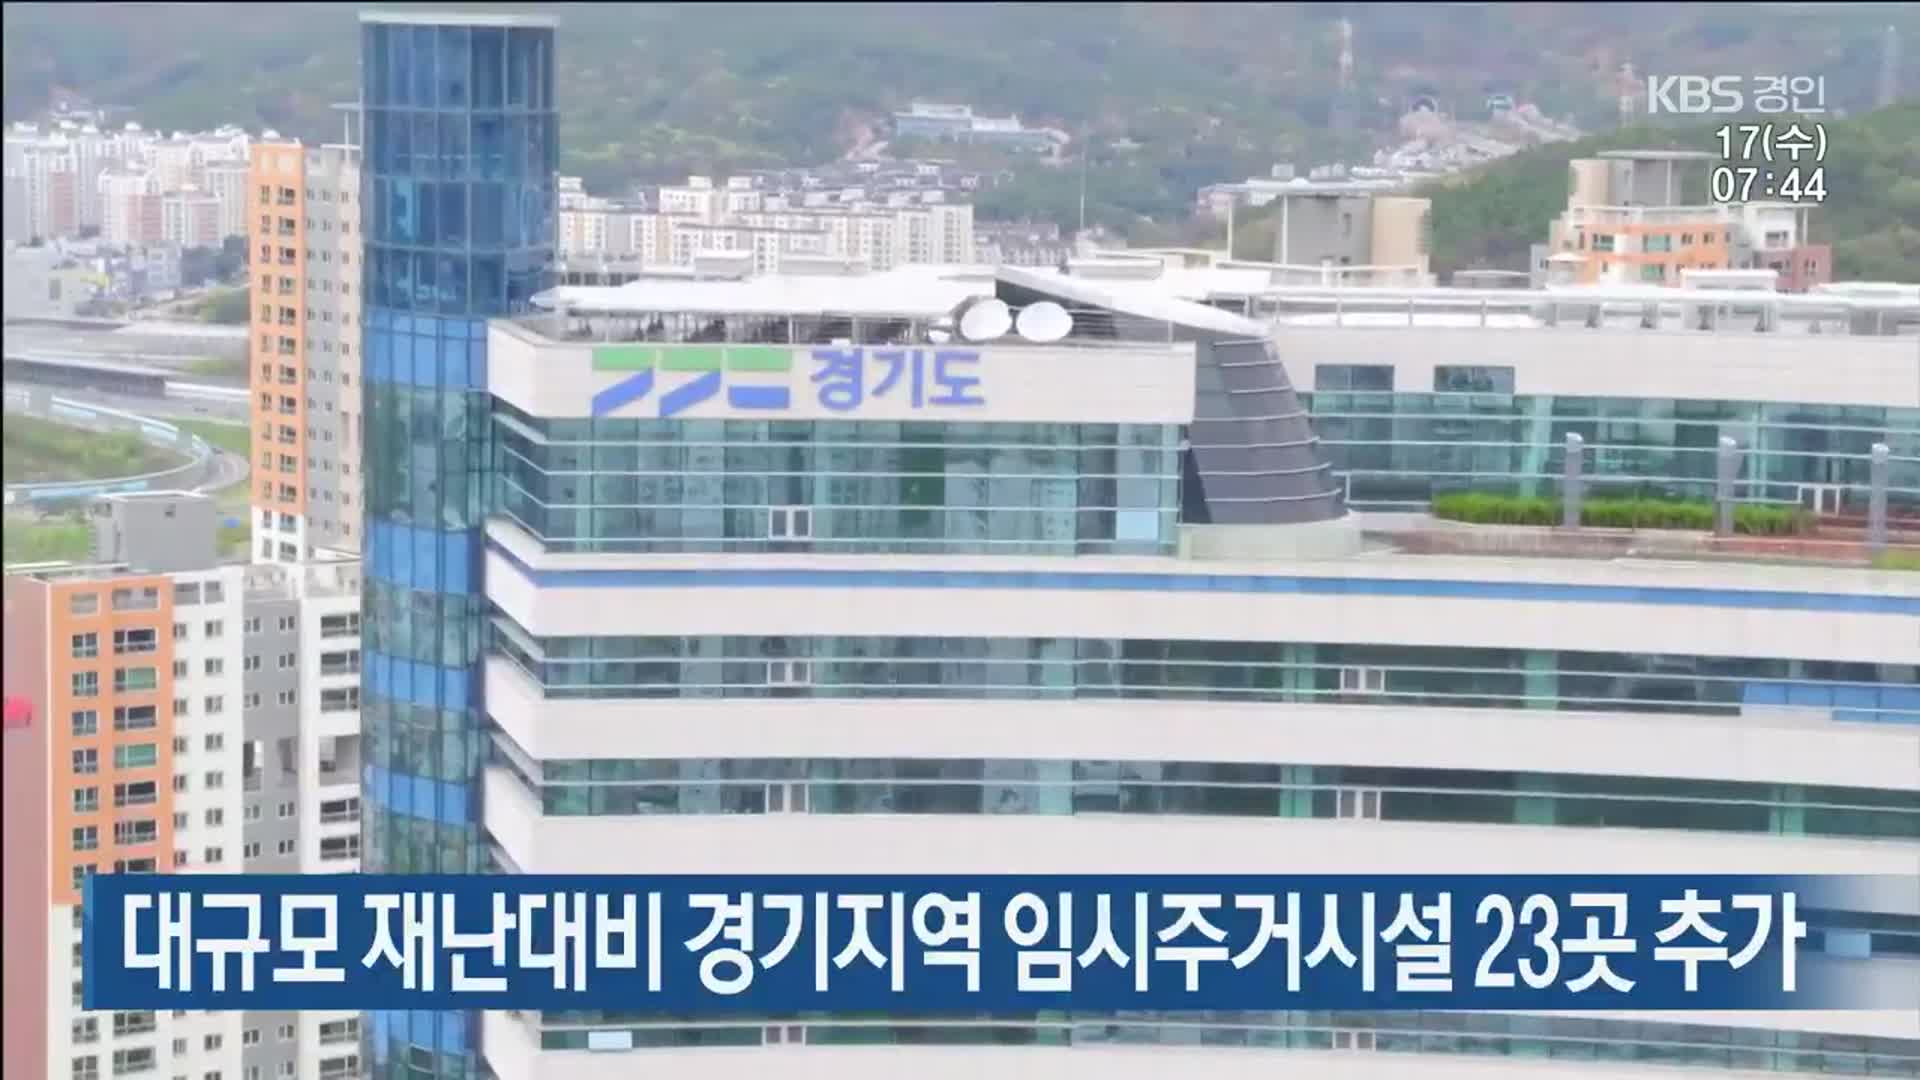 대규모 재난대비 경기지역 임시주거시설 23곳 추가